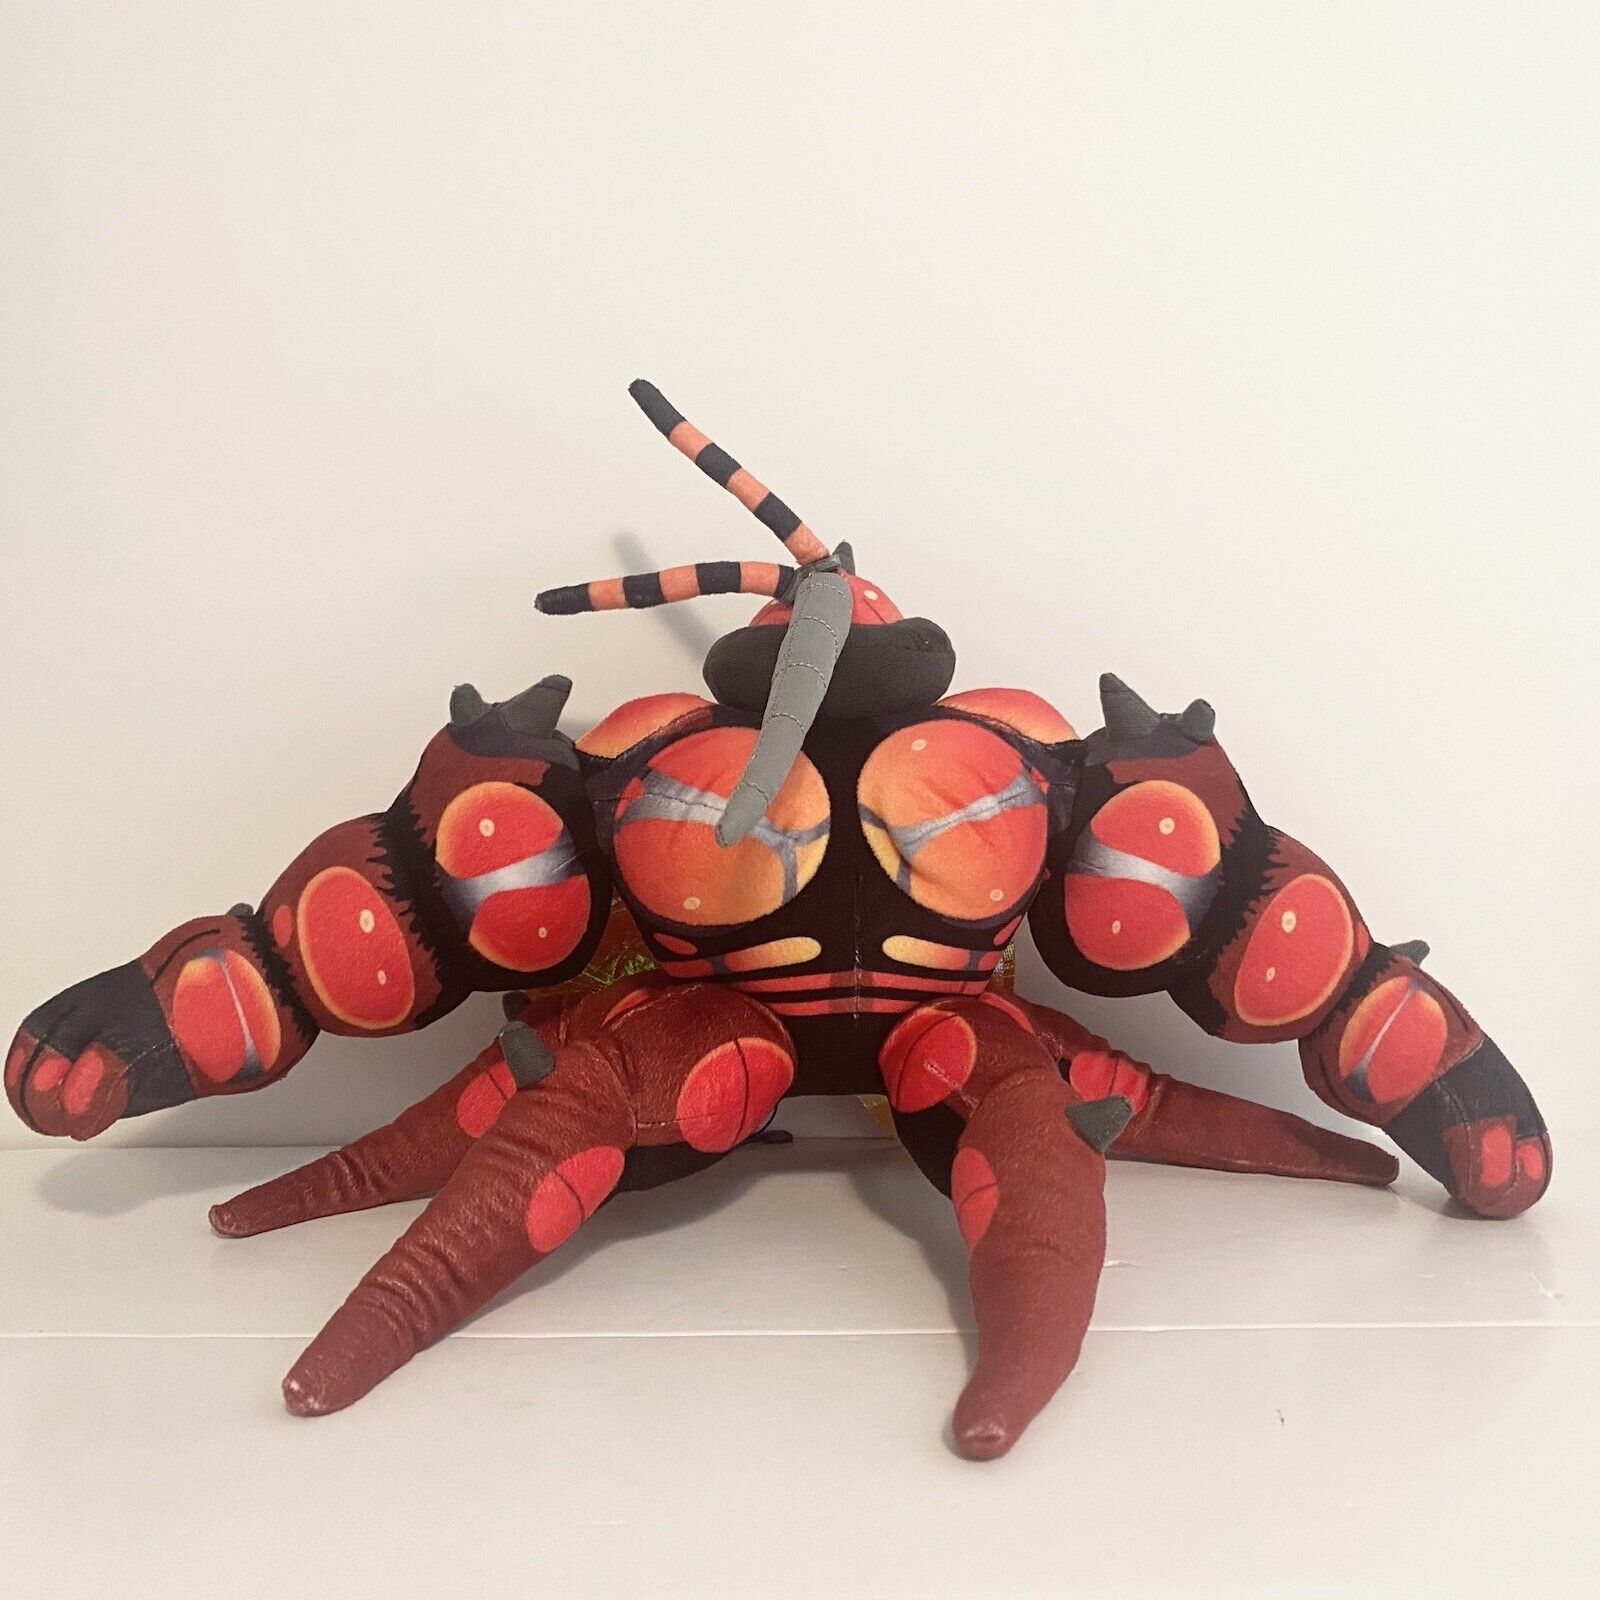 Buzzwole Pokemon Center Poké Ultra Beast Plush 12” Black Red Insect Stuffed Toy